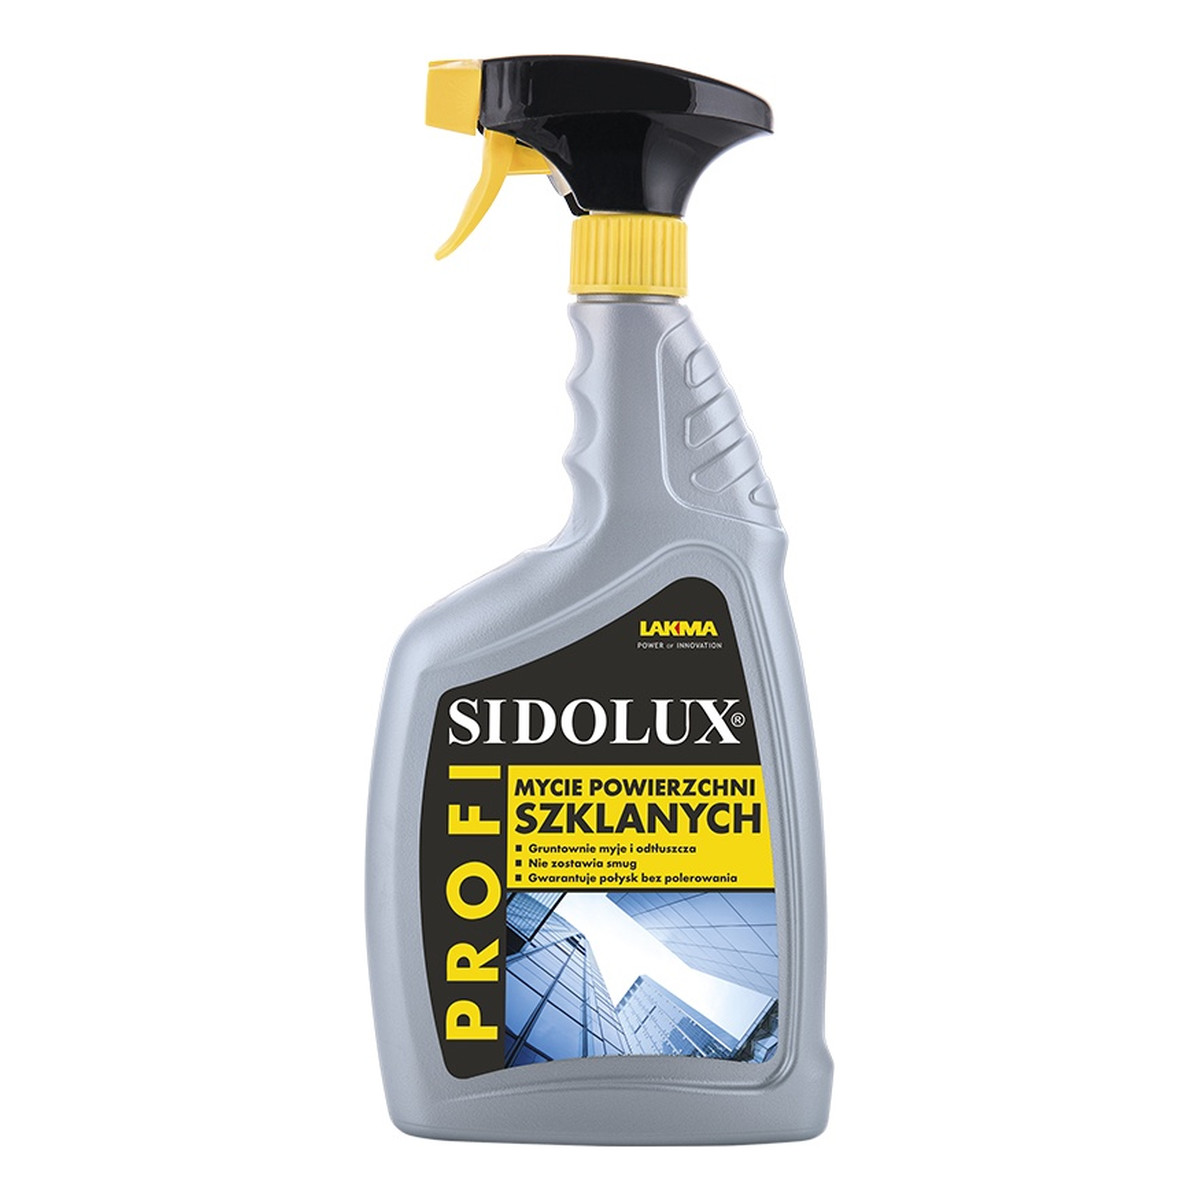 Sidolux Profi Spray do mycia powierzchni szklanych 750ml